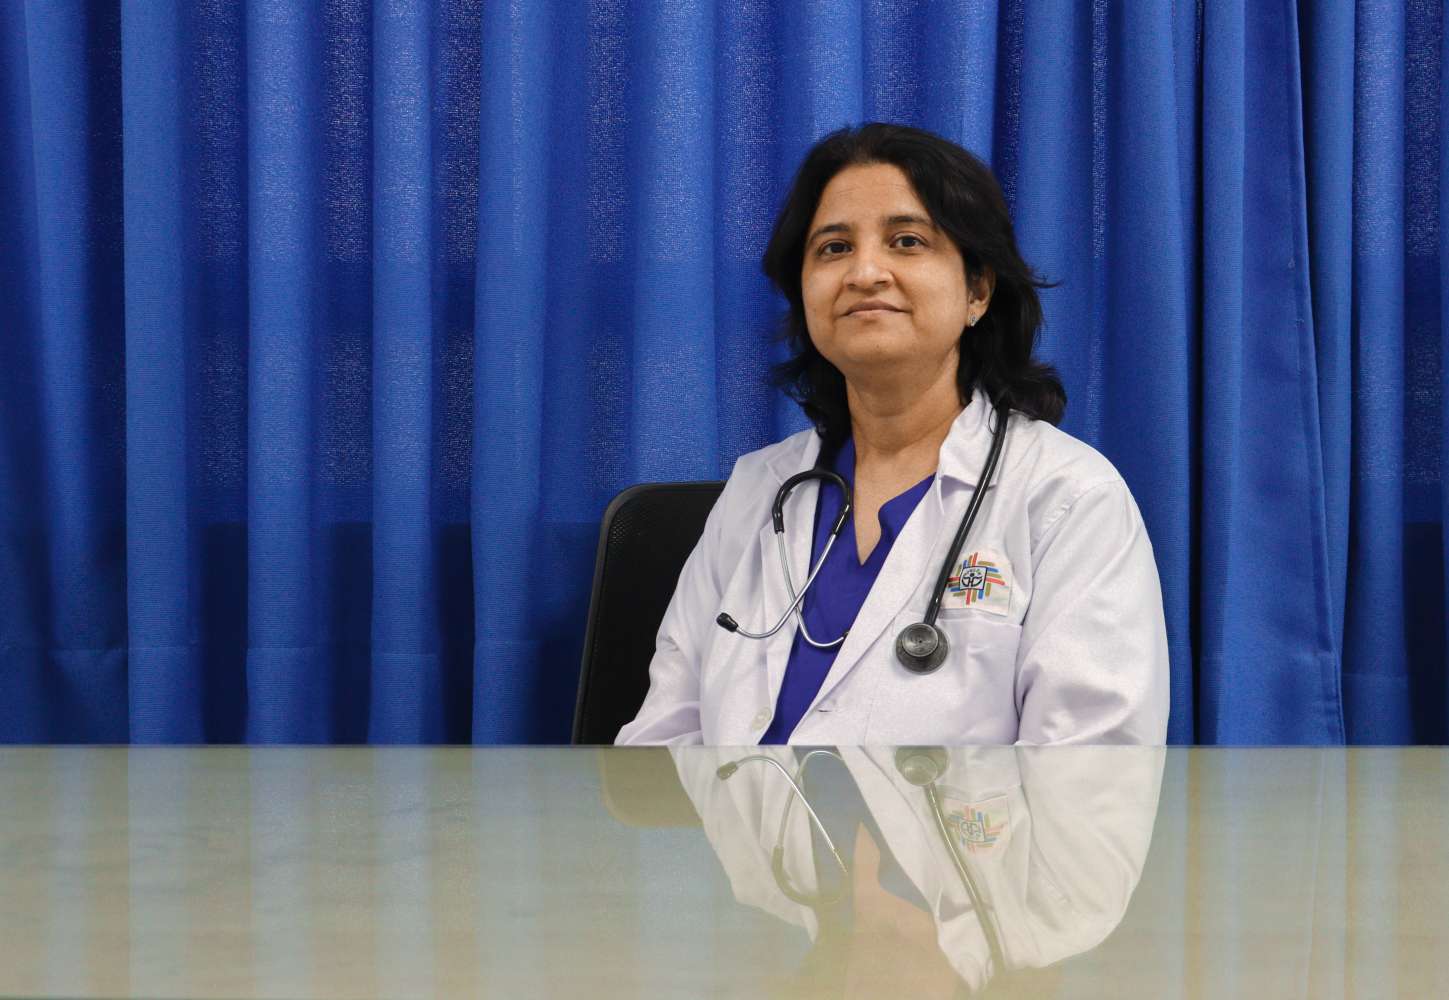 Dr. Seema Jain